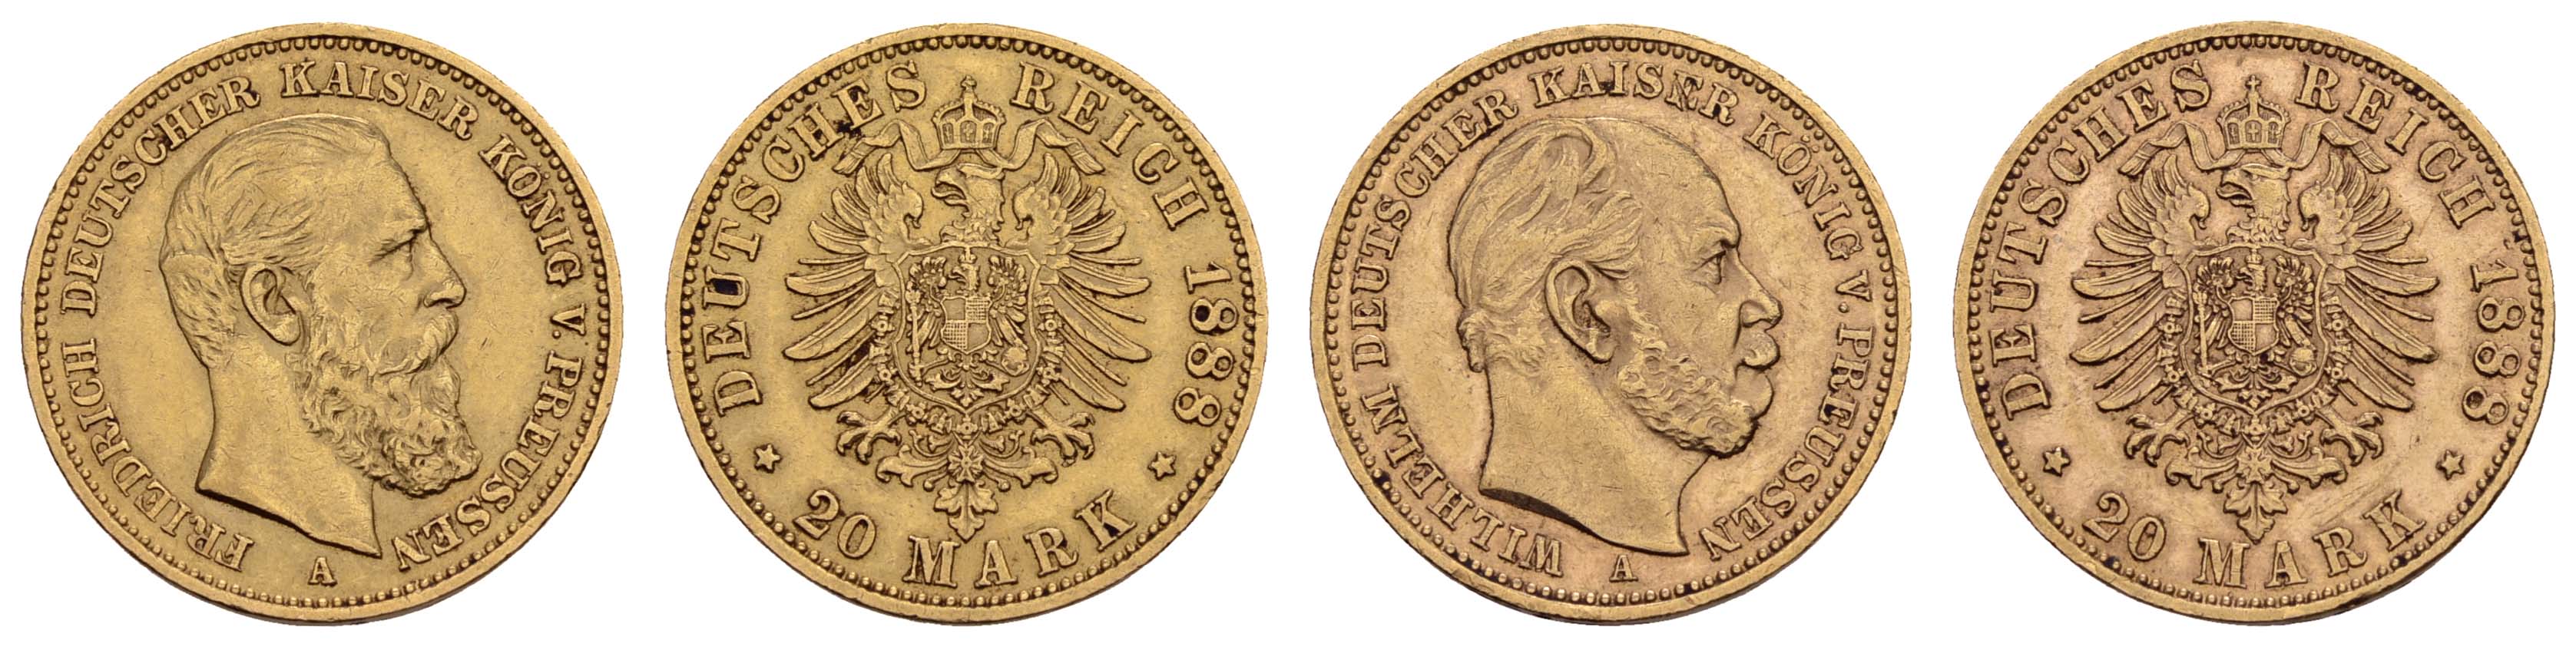 Lot 883 - deutschland Kaiserreich Goldmünzen - Preußen -  Auktionshaus Ulrich Felzmann GmbH & Co. KG Coins single lots